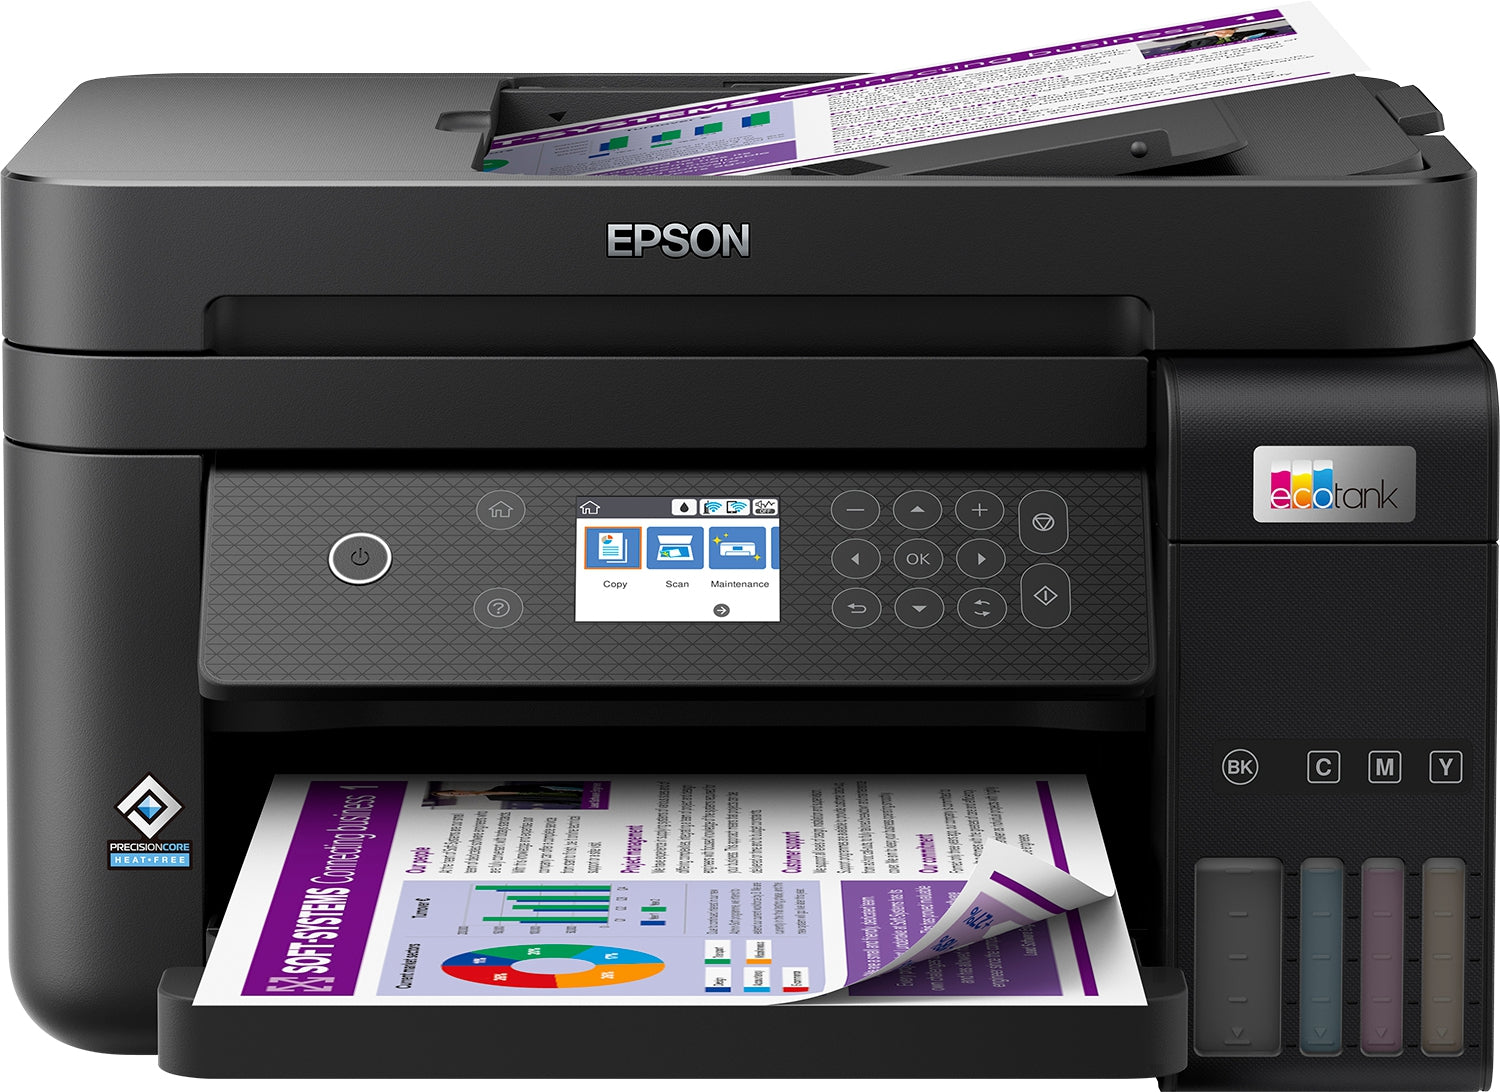 Impresora Multifuncional Epson C11Cj61301 4800 X 1200 Dpi Inyección De Tinta